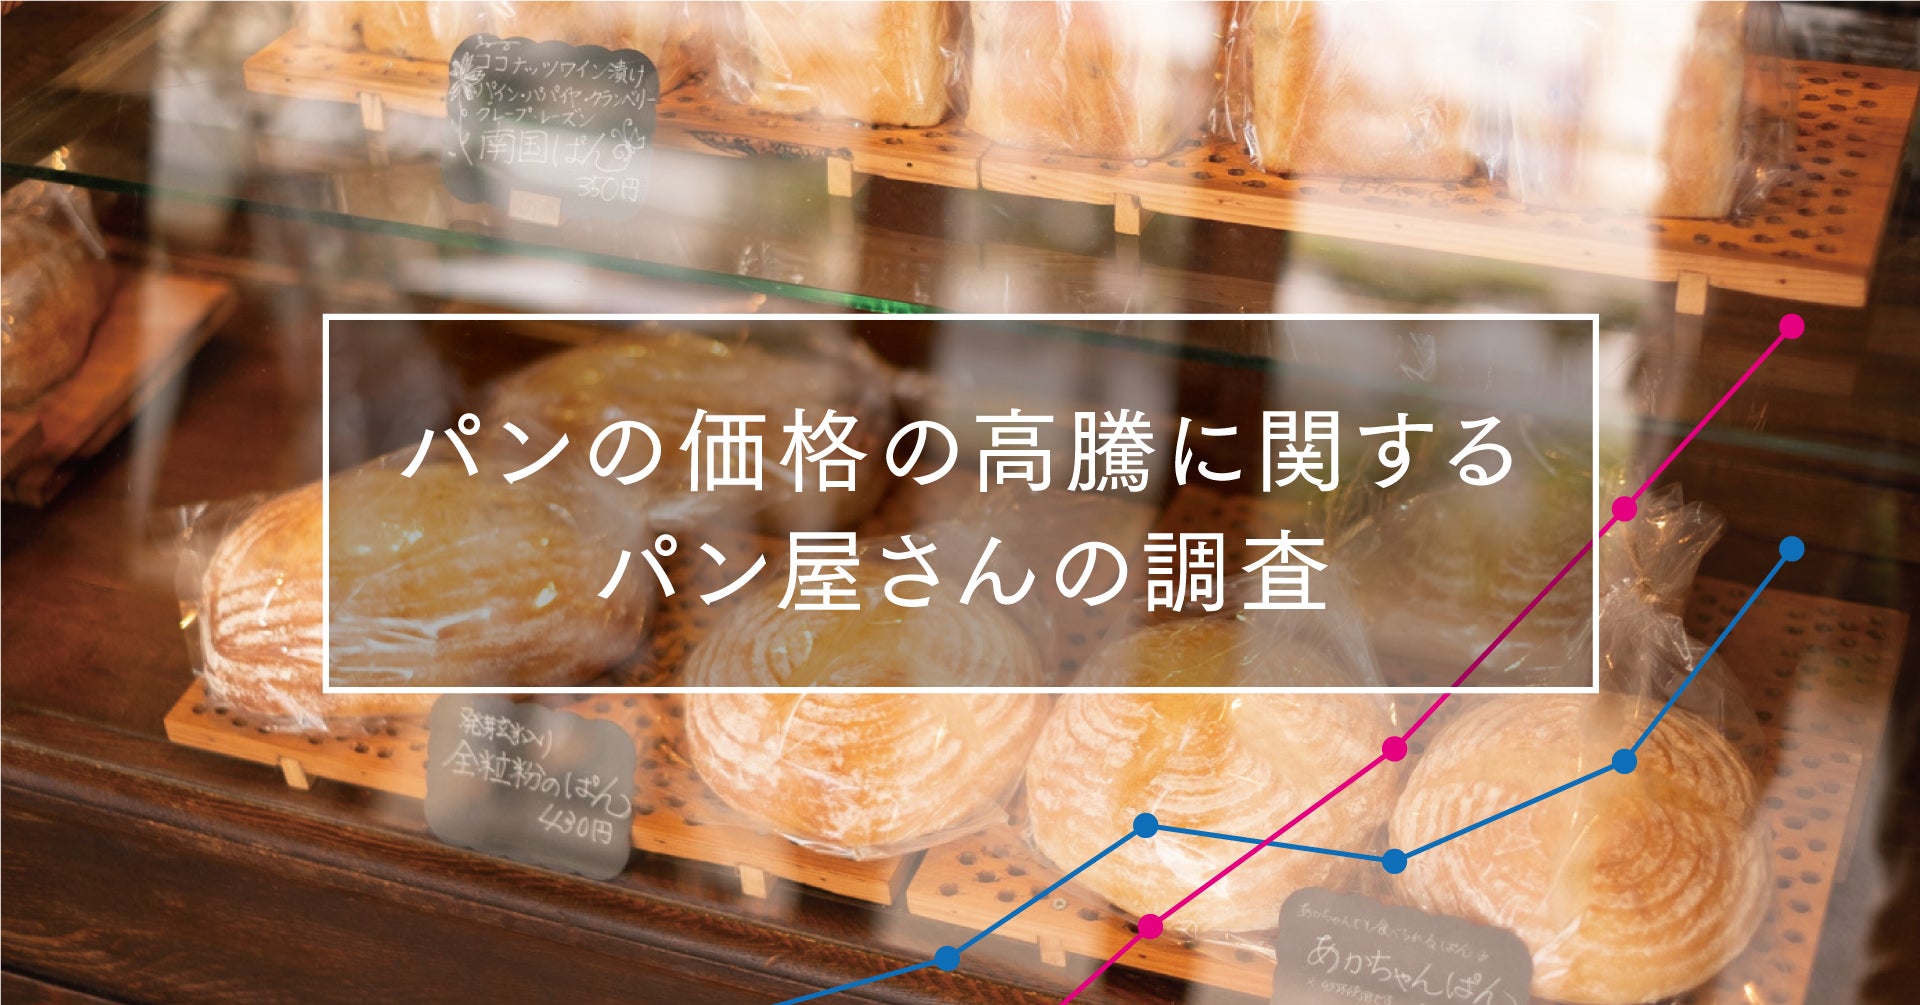 懐かしの屋台や世界的パフォーマーによるイベント等内容盛り沢山の
「第2回！渋谷横丁 夏祭り」が7月8日(金)17時スタート！